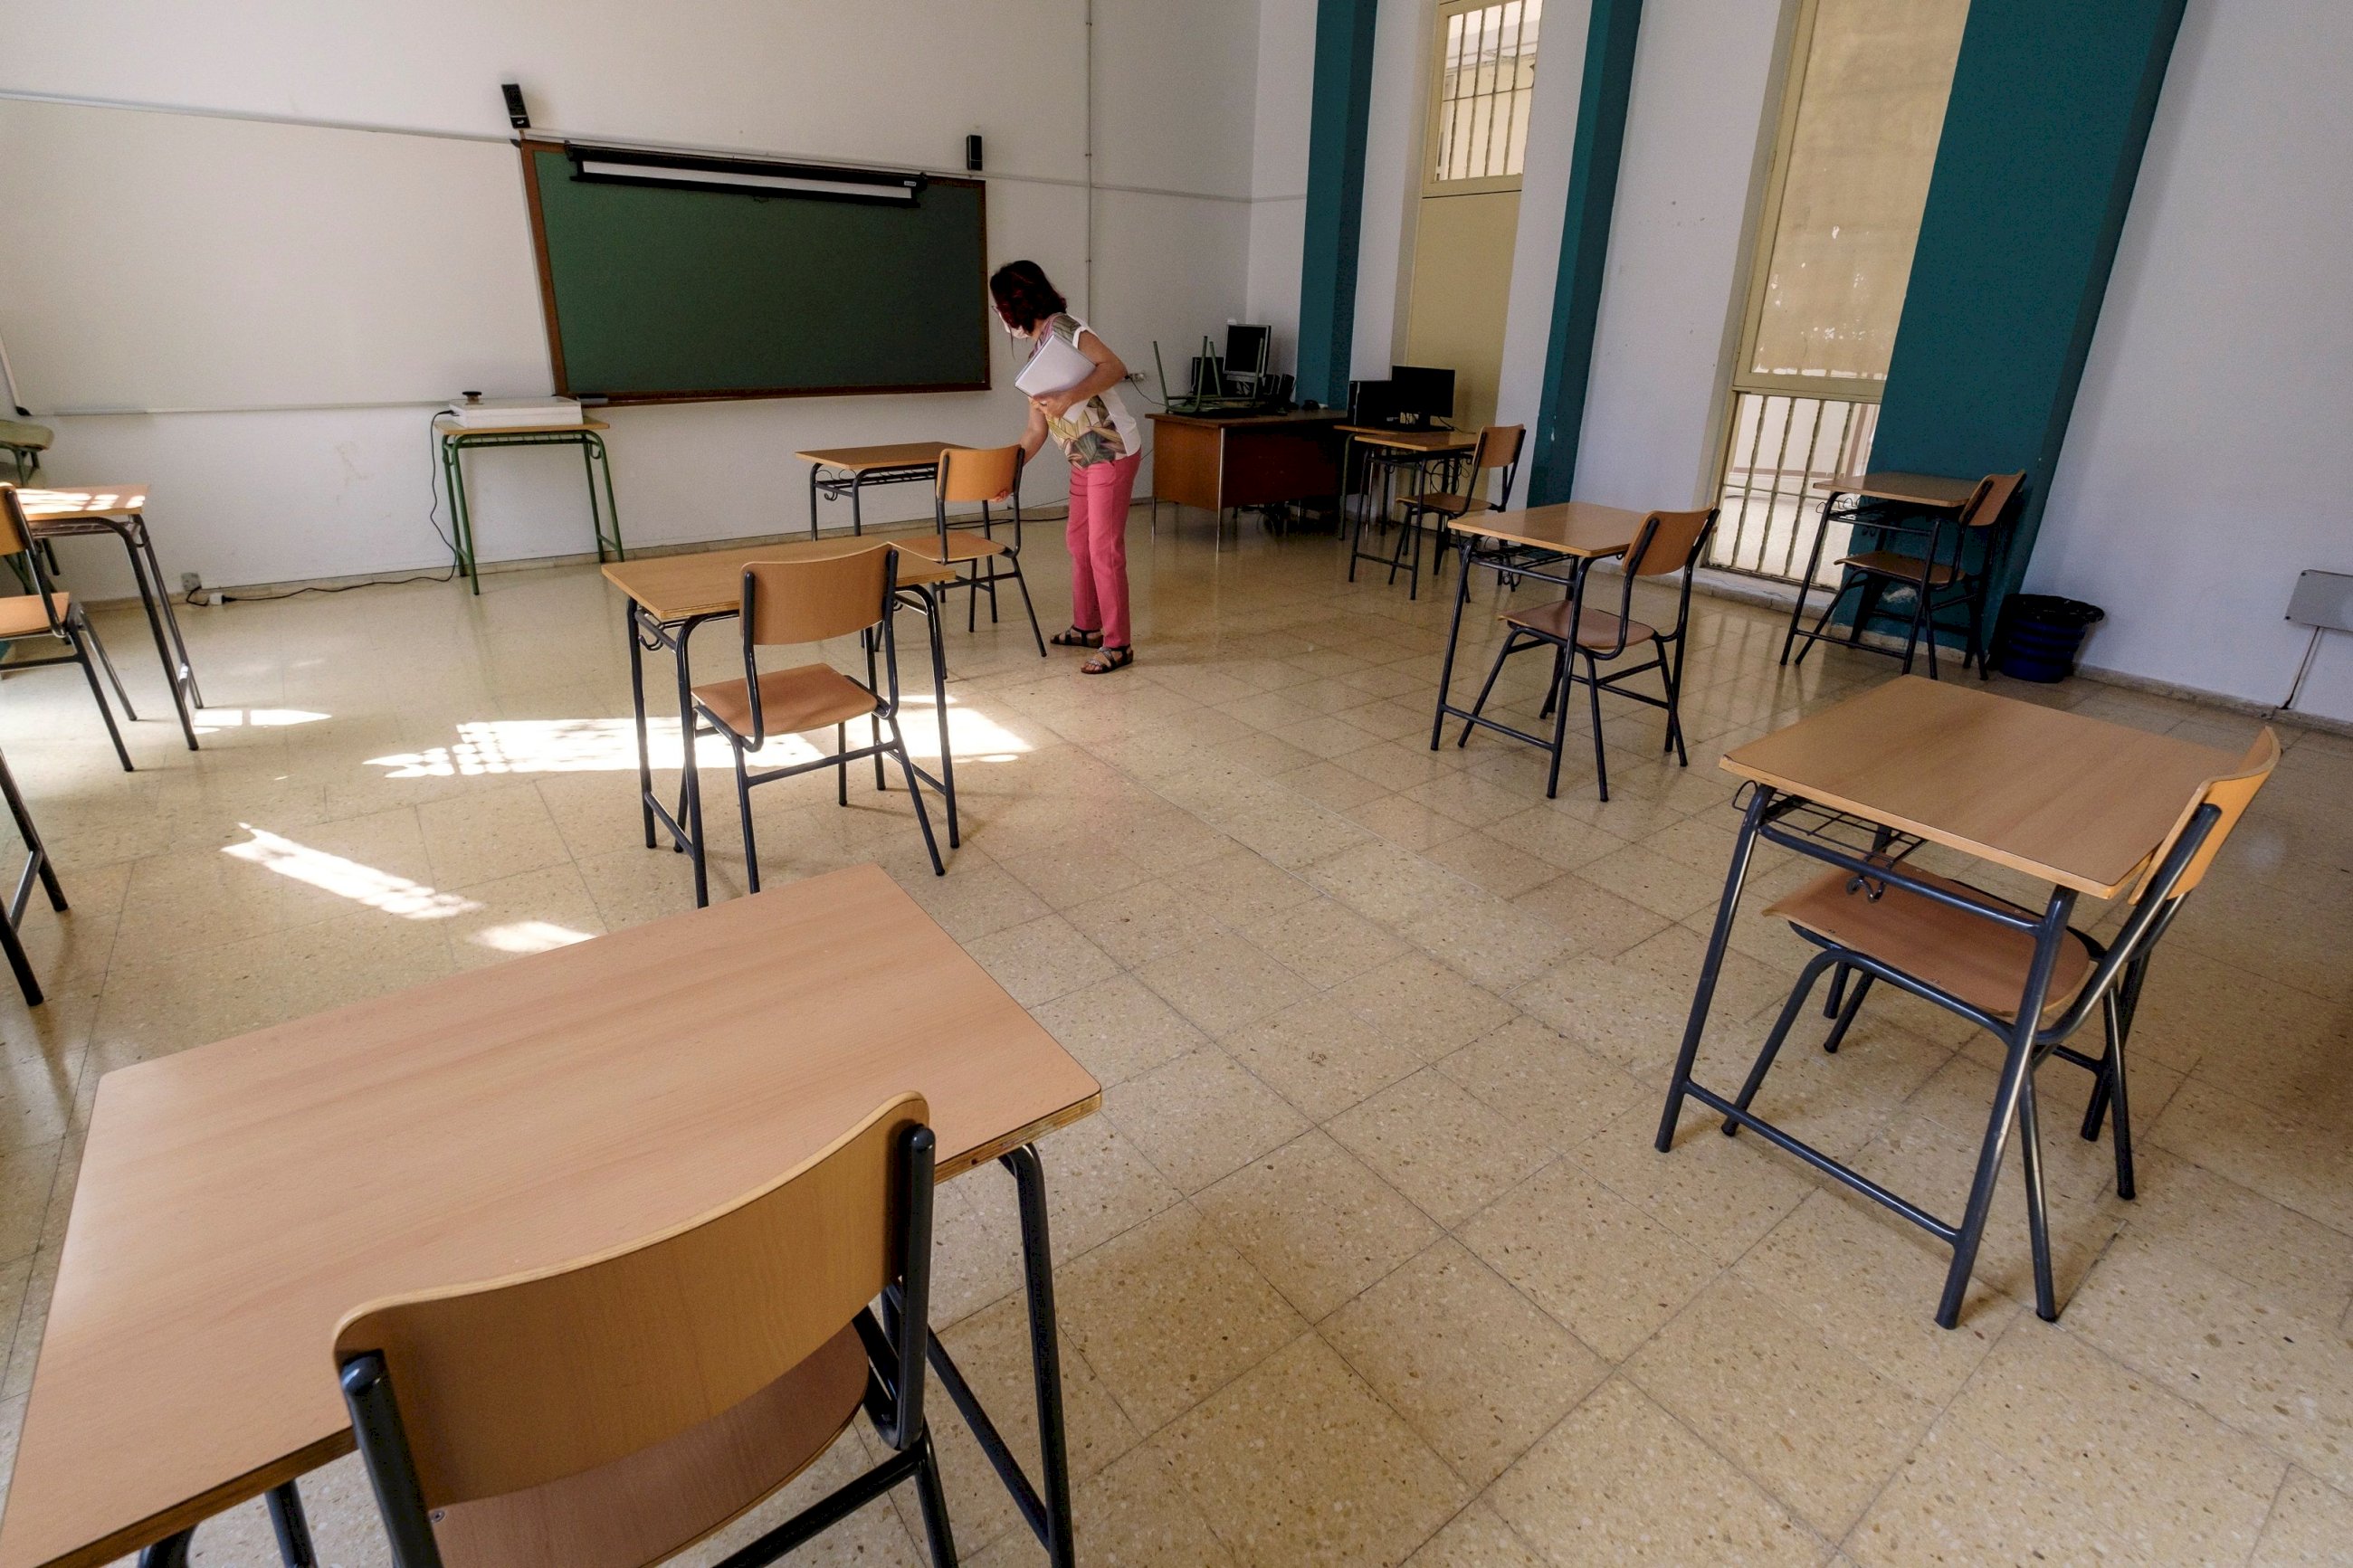 Separación de las mesas en un colegio. Foto: Efe